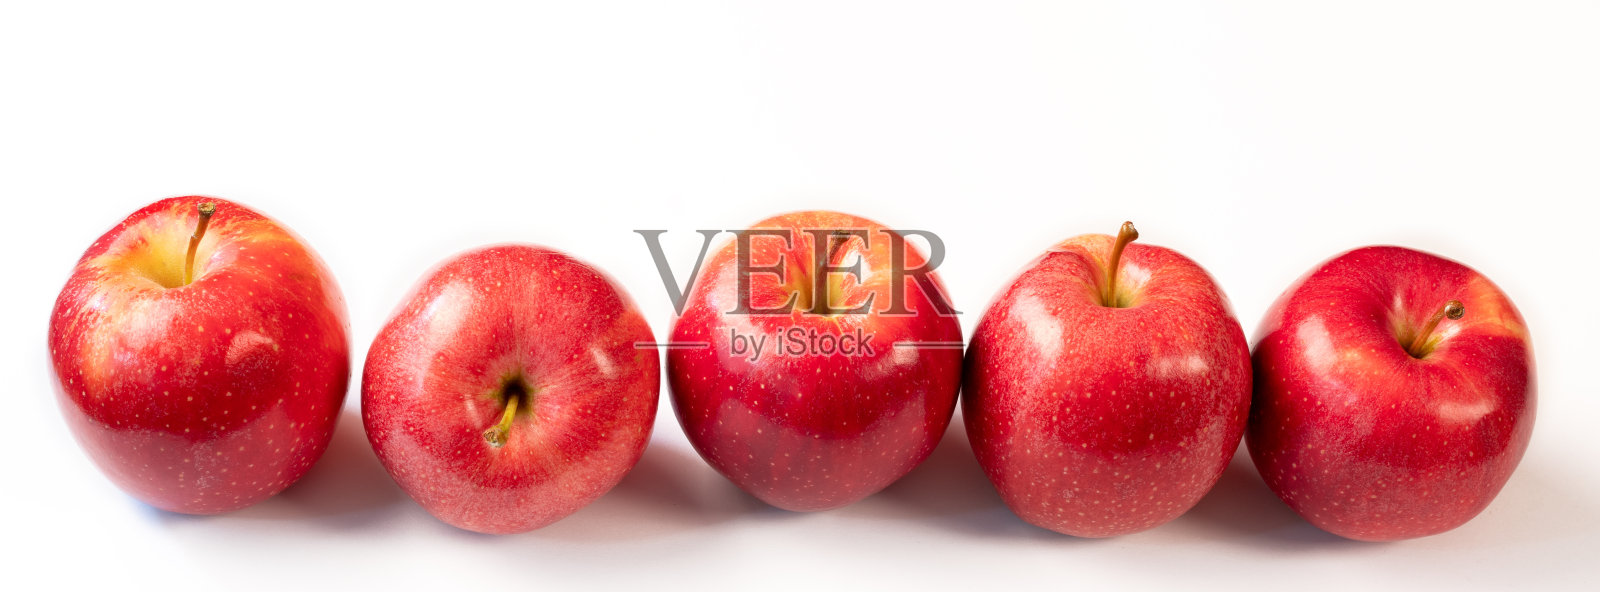 白色背景下成熟的红苹果照片摄影图片